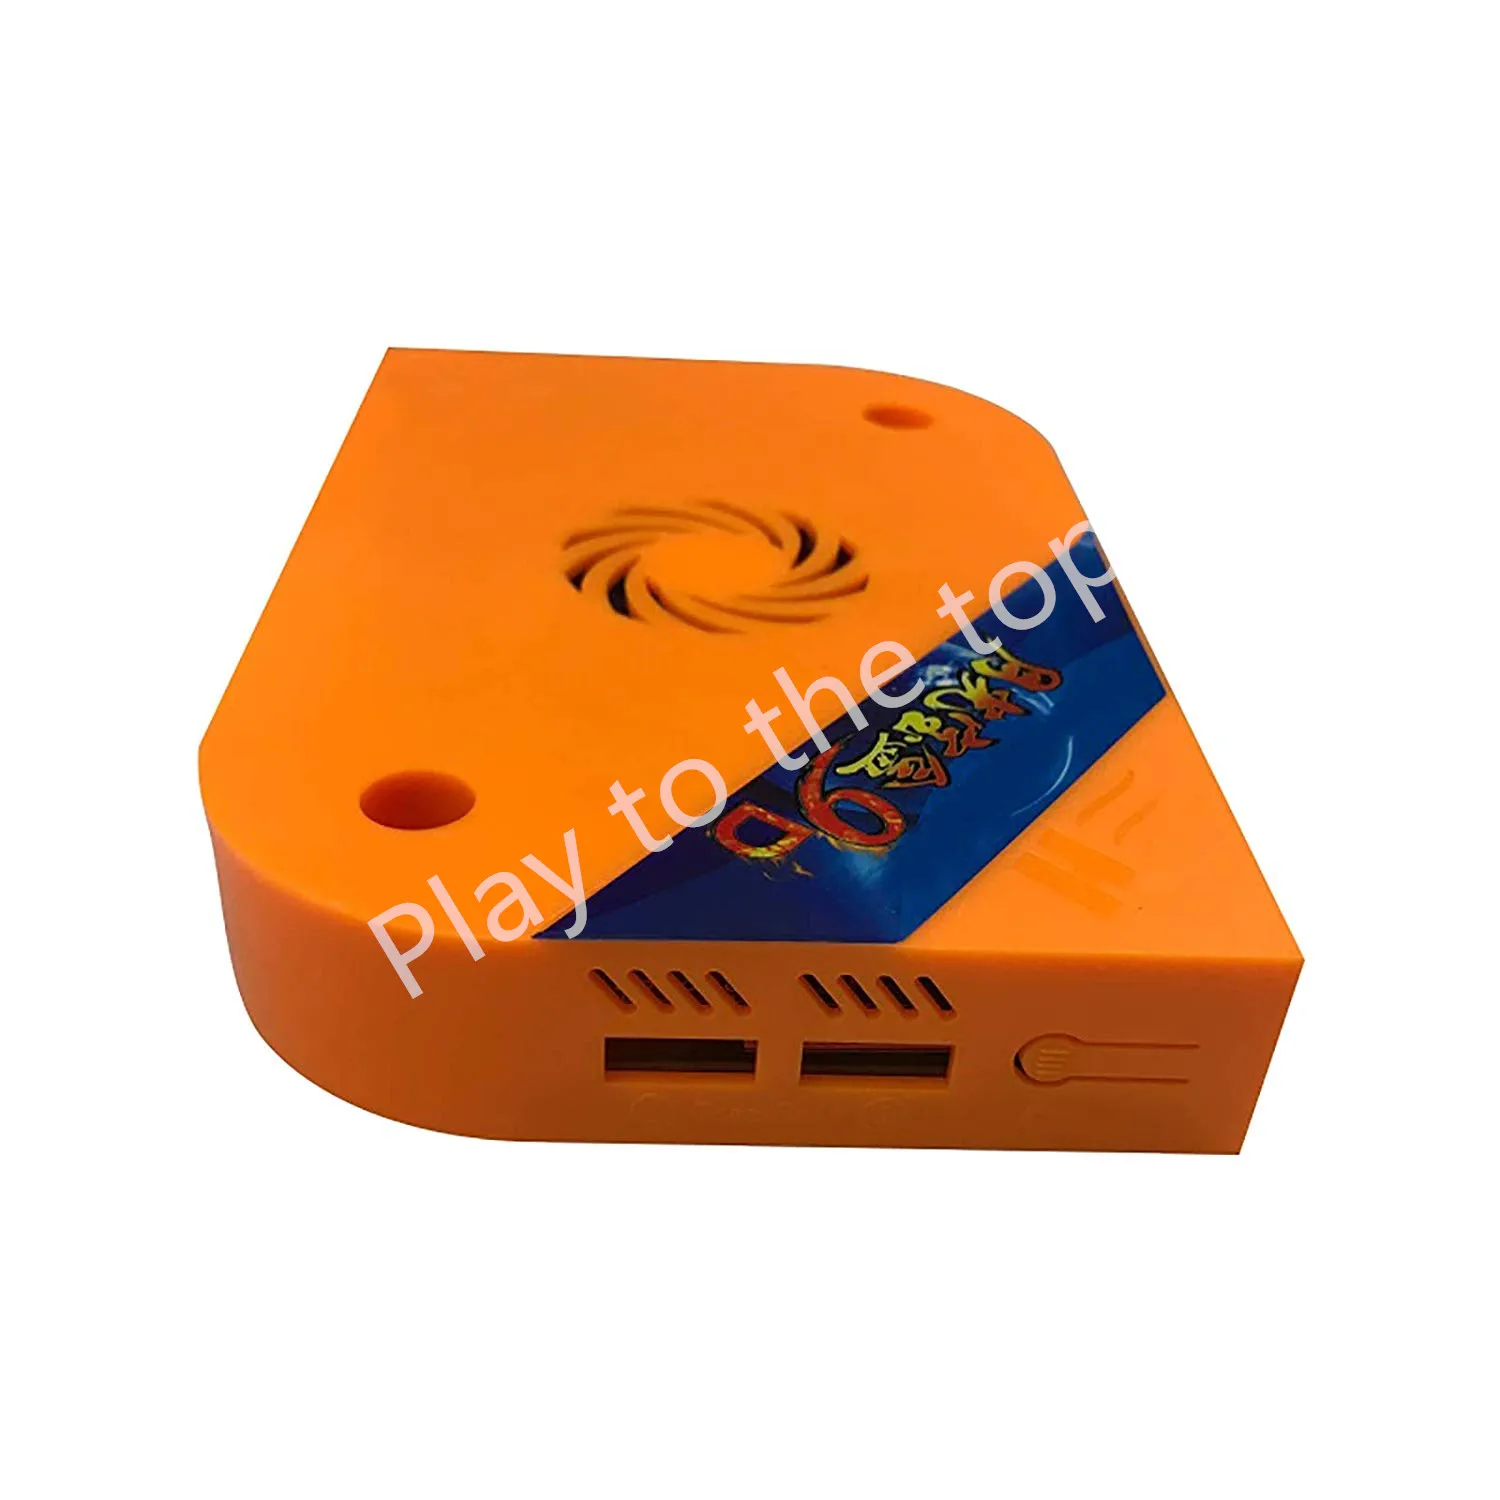 Аркада Pandora box 9D(2222 в 1) neo geo JAMMA аркадная игра мульти конвектор мультиигровой карты vga и HDMI выход аркадный шкаф